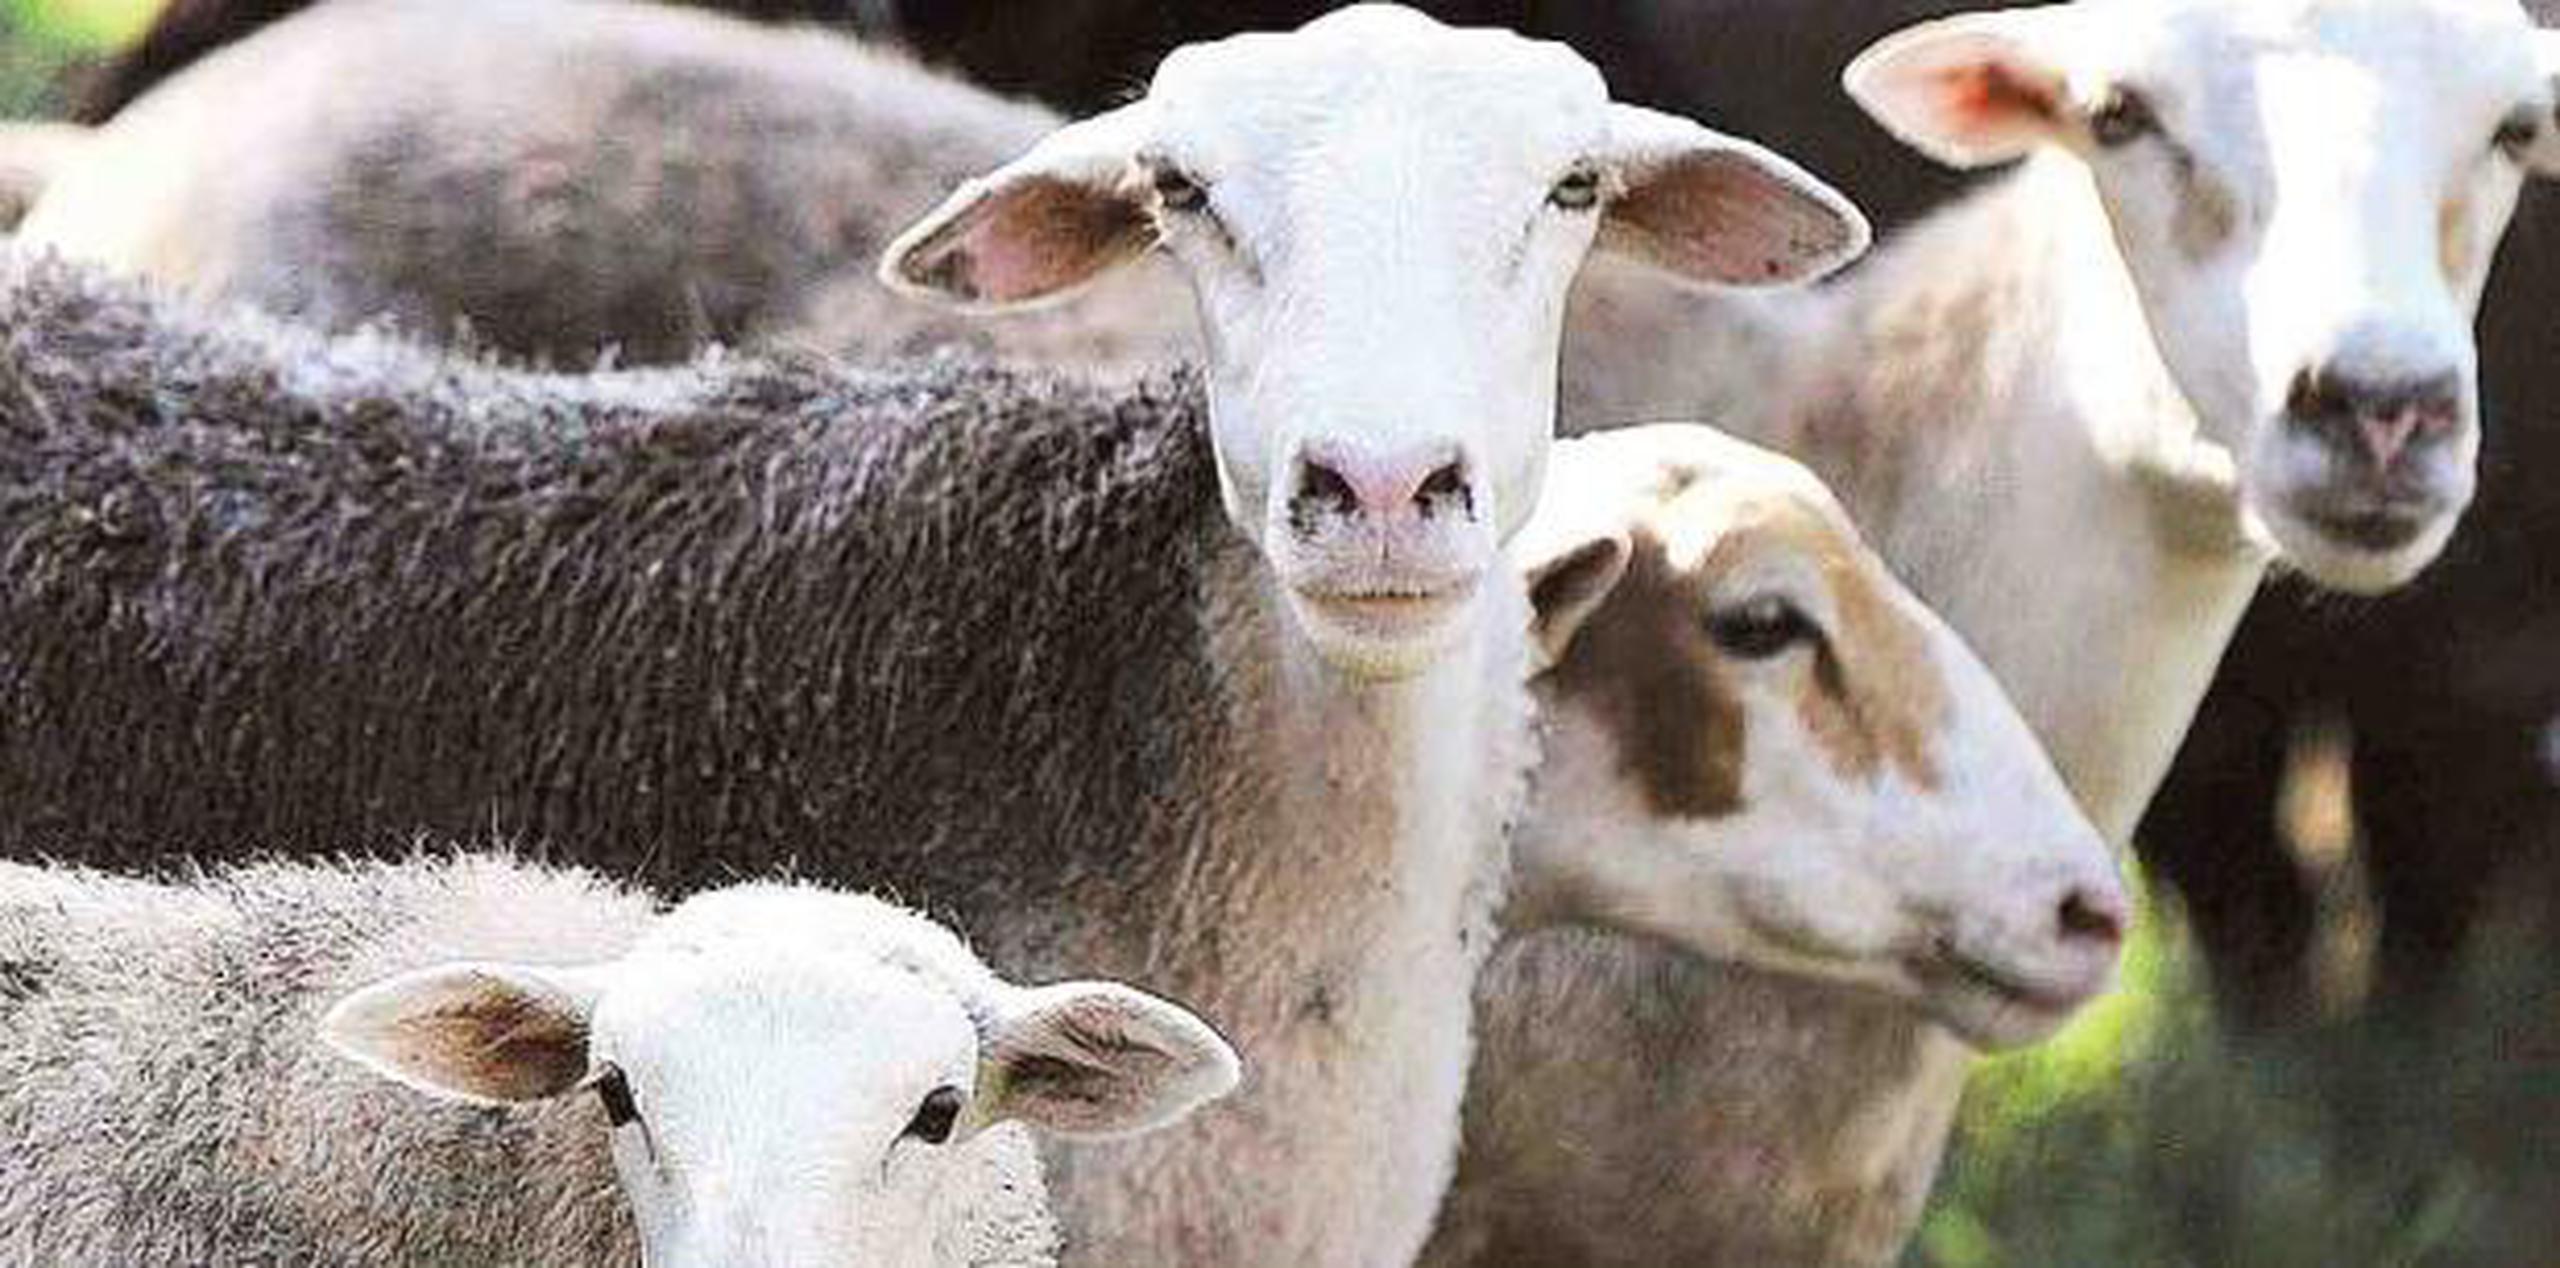 El hurto de las ovejas ocurrió a las 3:32 p.m. del martes en unos terrenos presuntamente pertenecientes a la Autoridad de Tierras. (archivo)